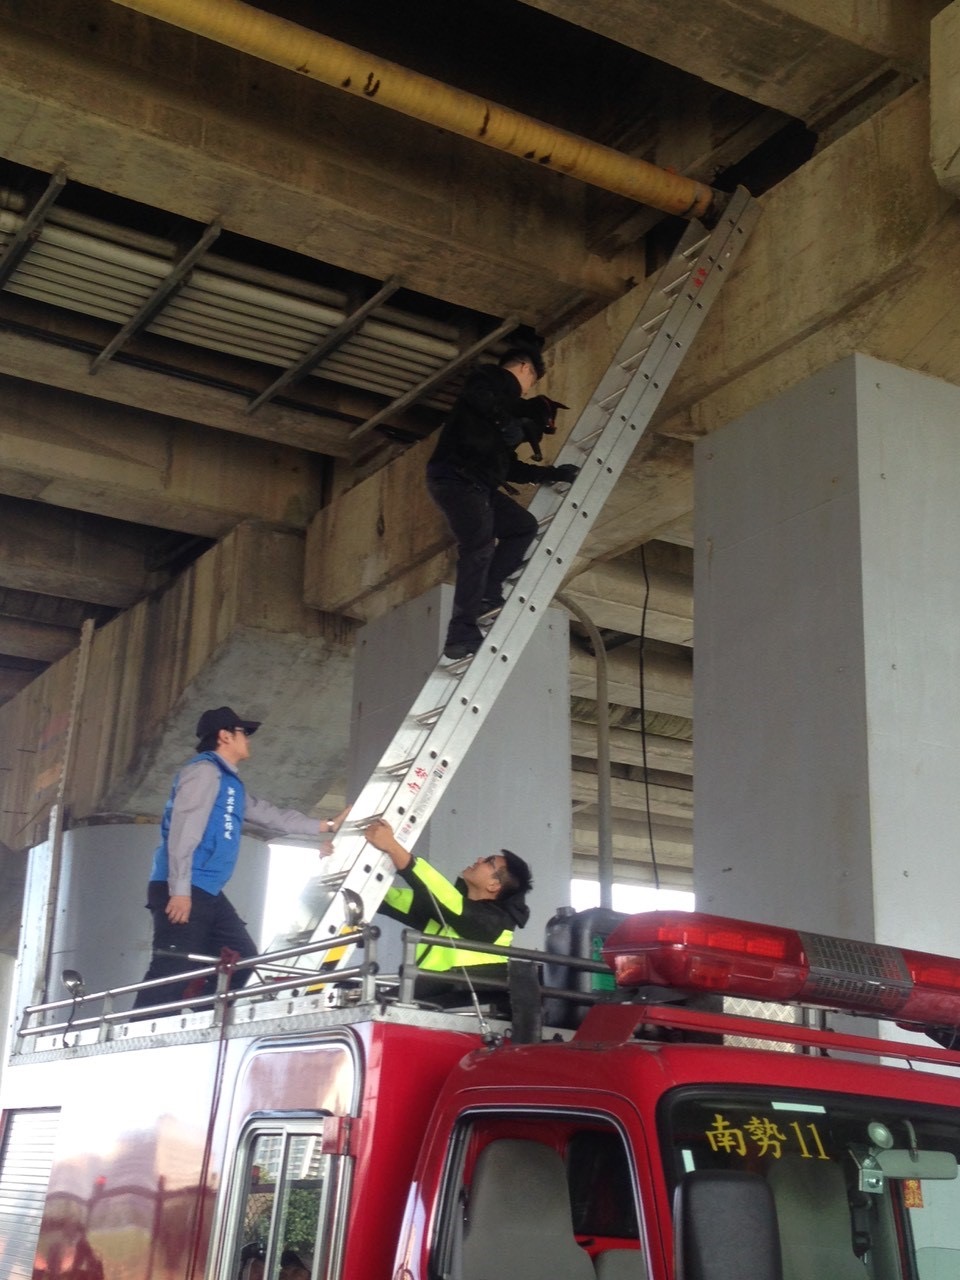 过往高空救援案件数不多时，动保处还可以向消防局请求支援，协助出动云梯车救援困在高架桥上或是较高楼层的动物。图／新北市动保处提供